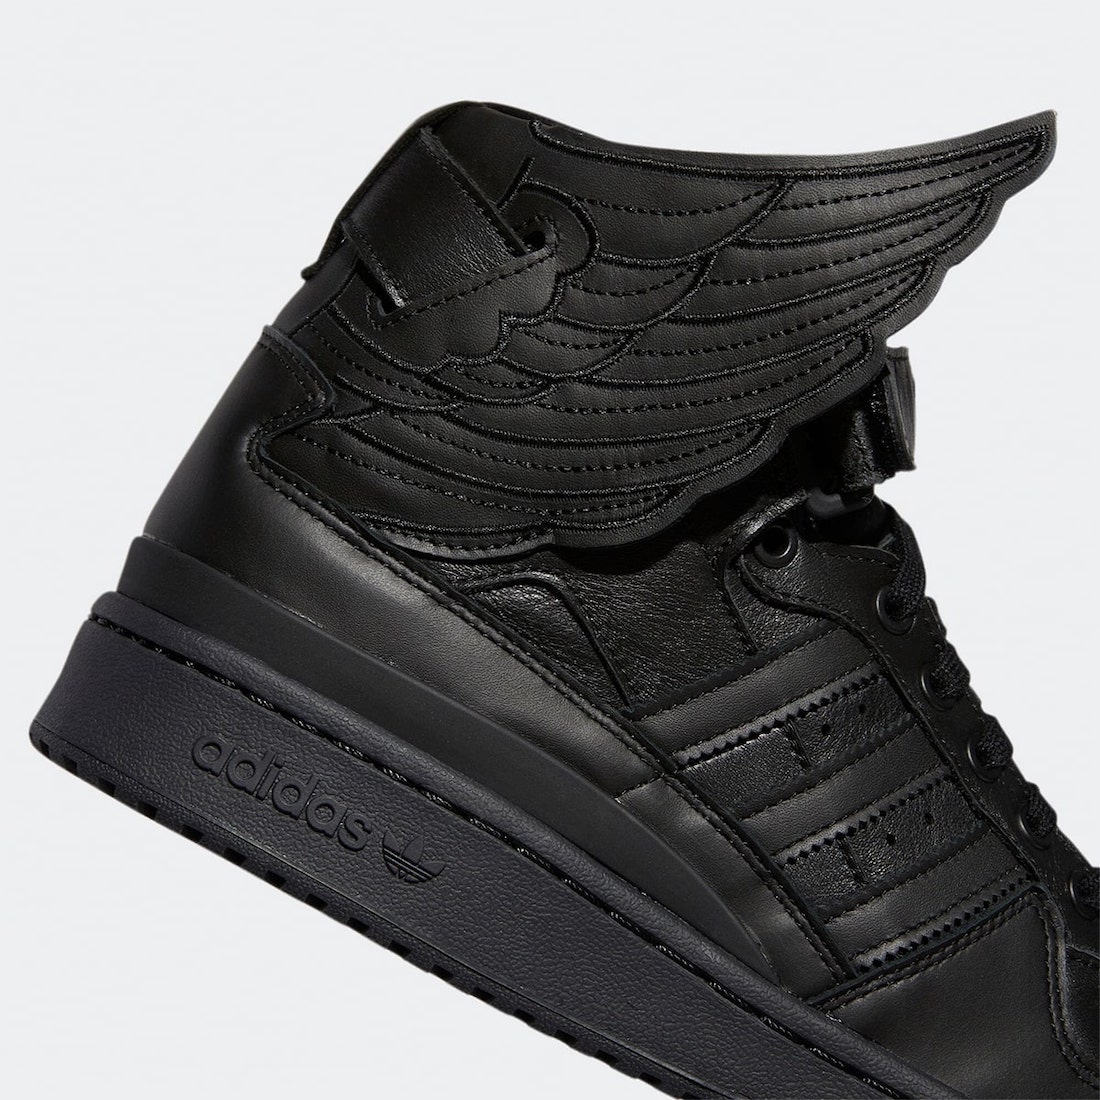 Jeremy Scott adidas Forum Hi Wings 4.0 Black GY4419 Release Date